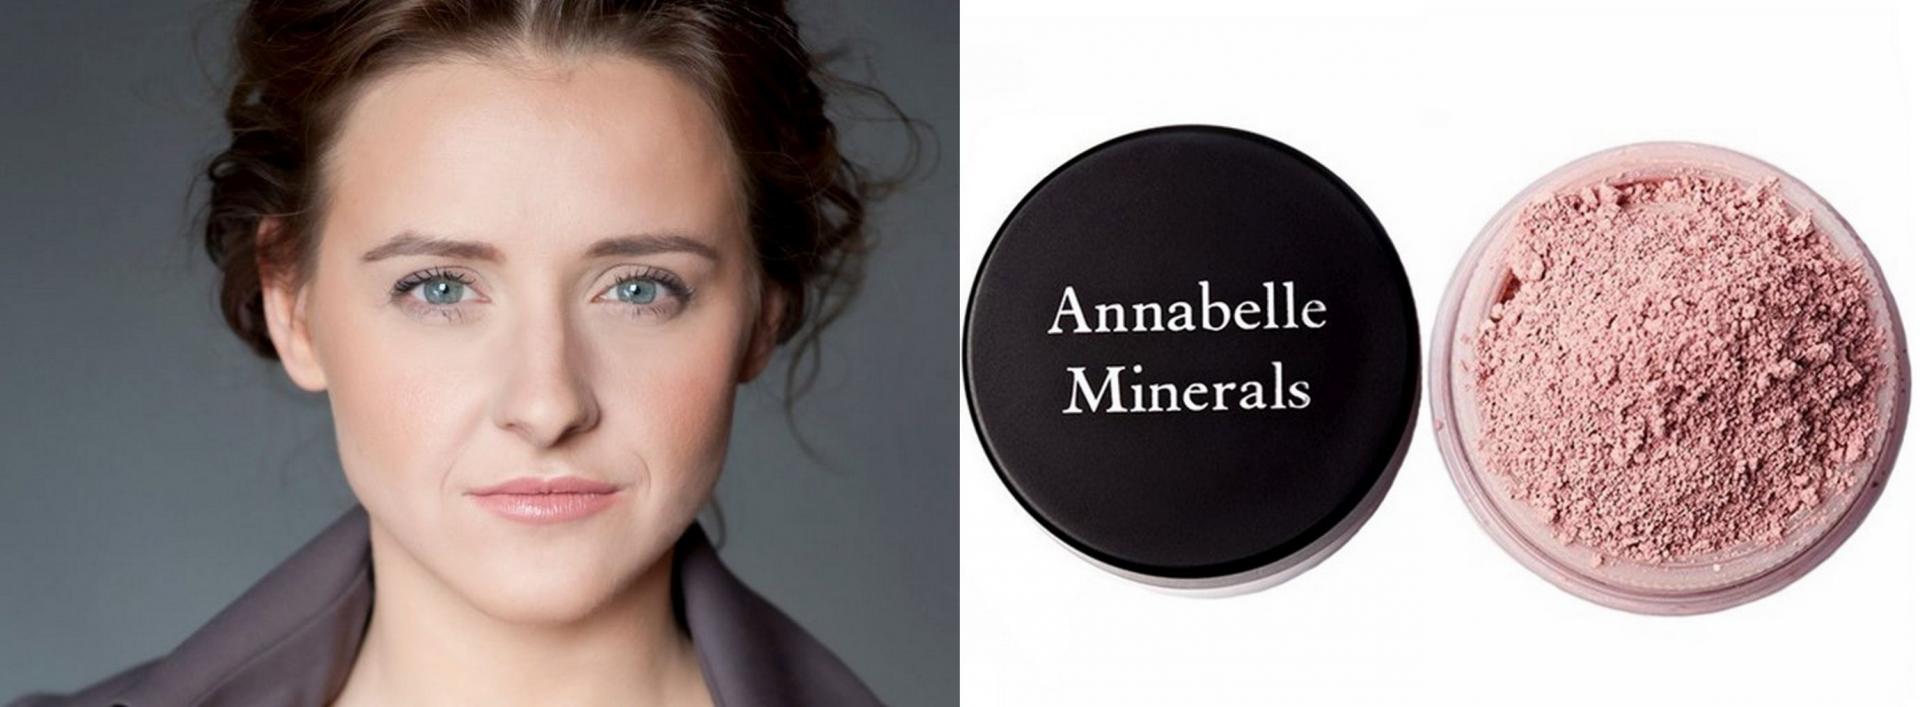 Na konkurencyjnym rynku kluczowe jest budowanie lojalności - mówi Anna Szczerba, założycielka firmy Annabelle Minerals